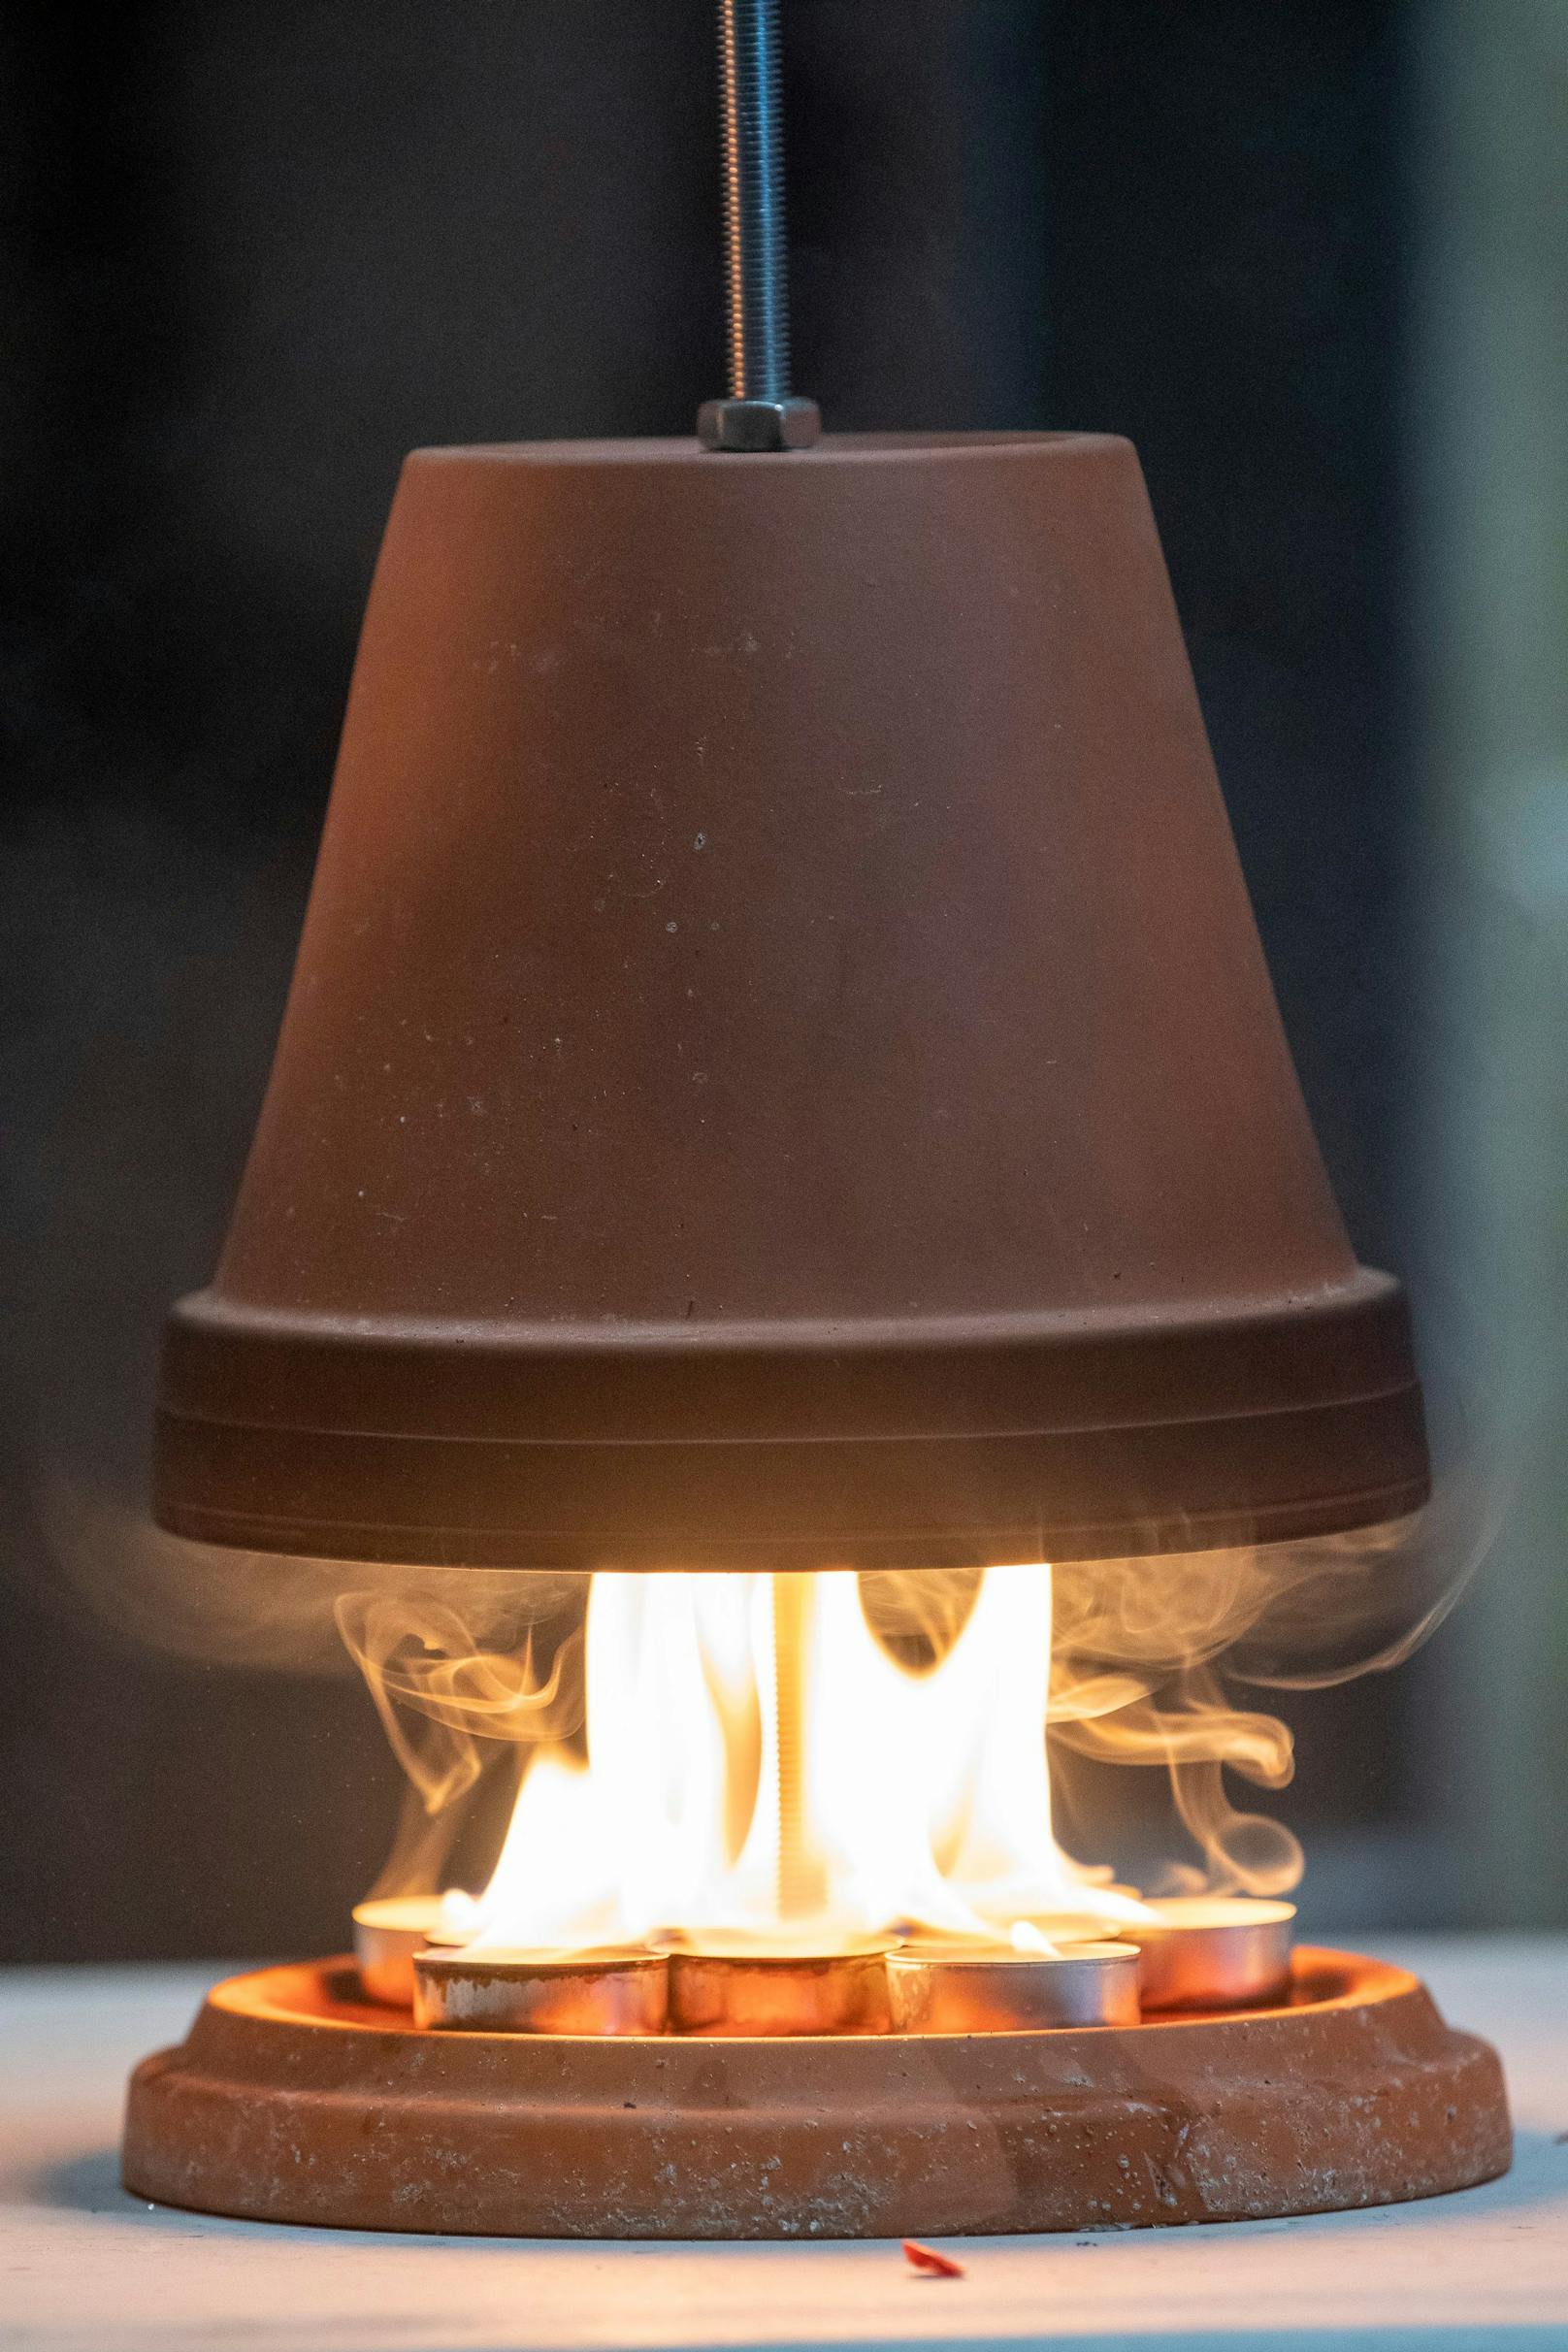 Teelichtöfen sind auf TikTok derzeit der heißeste Schrei, aber auch brandgefährlich!